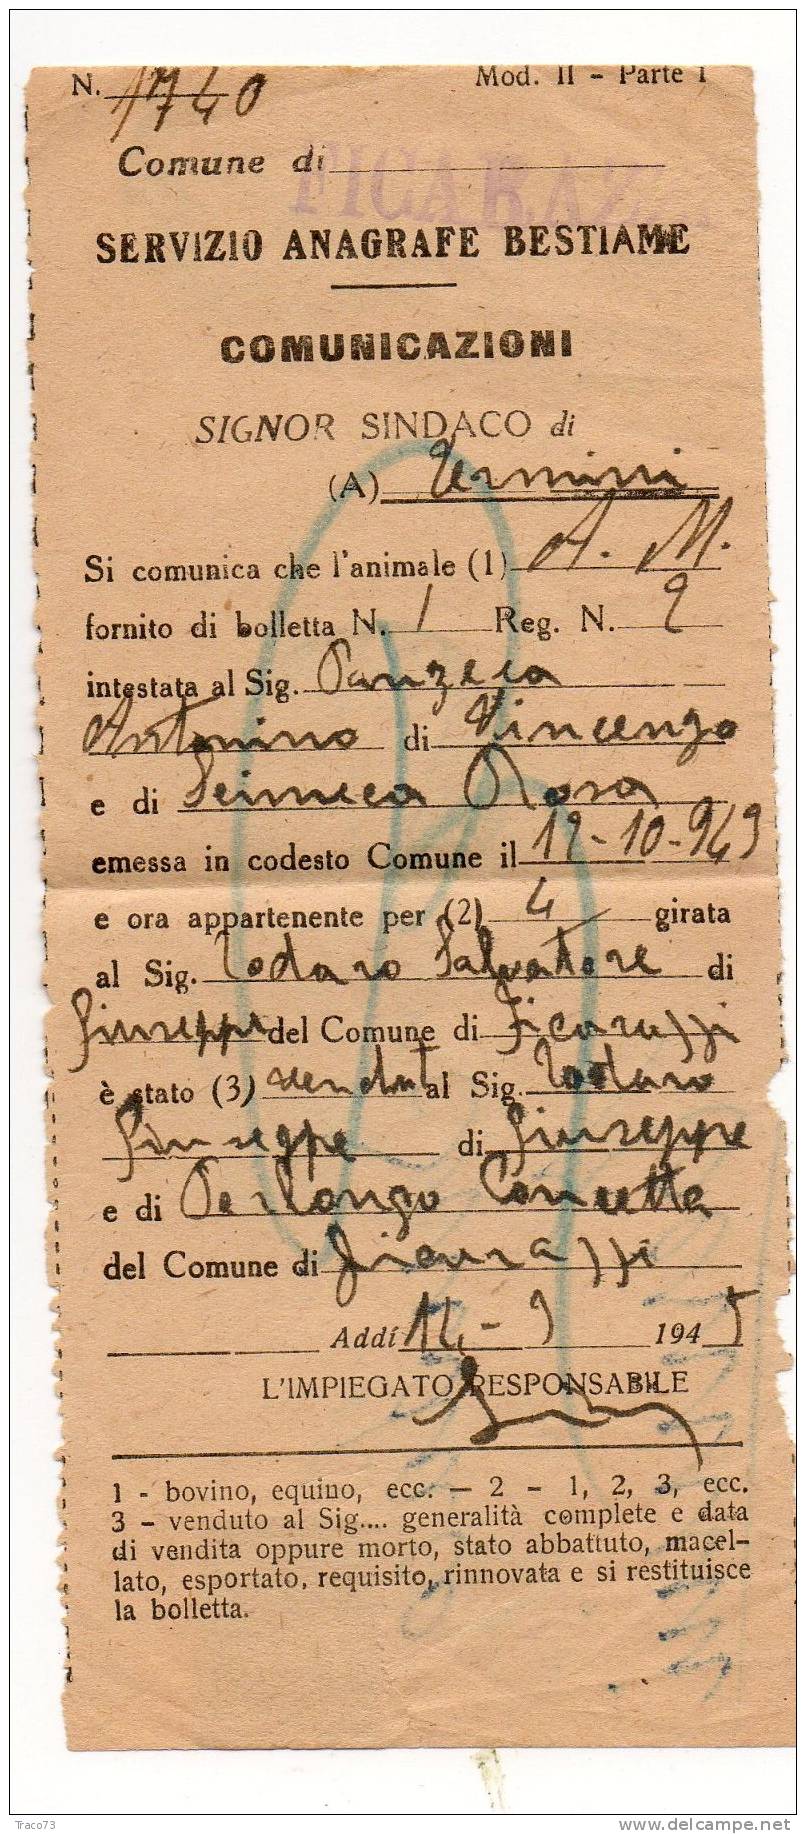 Servizio Anagrafe Bestiame 18.05.1945 - Luogotenenza - Cent. 50 Posta Aerea "PM" - Isolato - Marcophilie